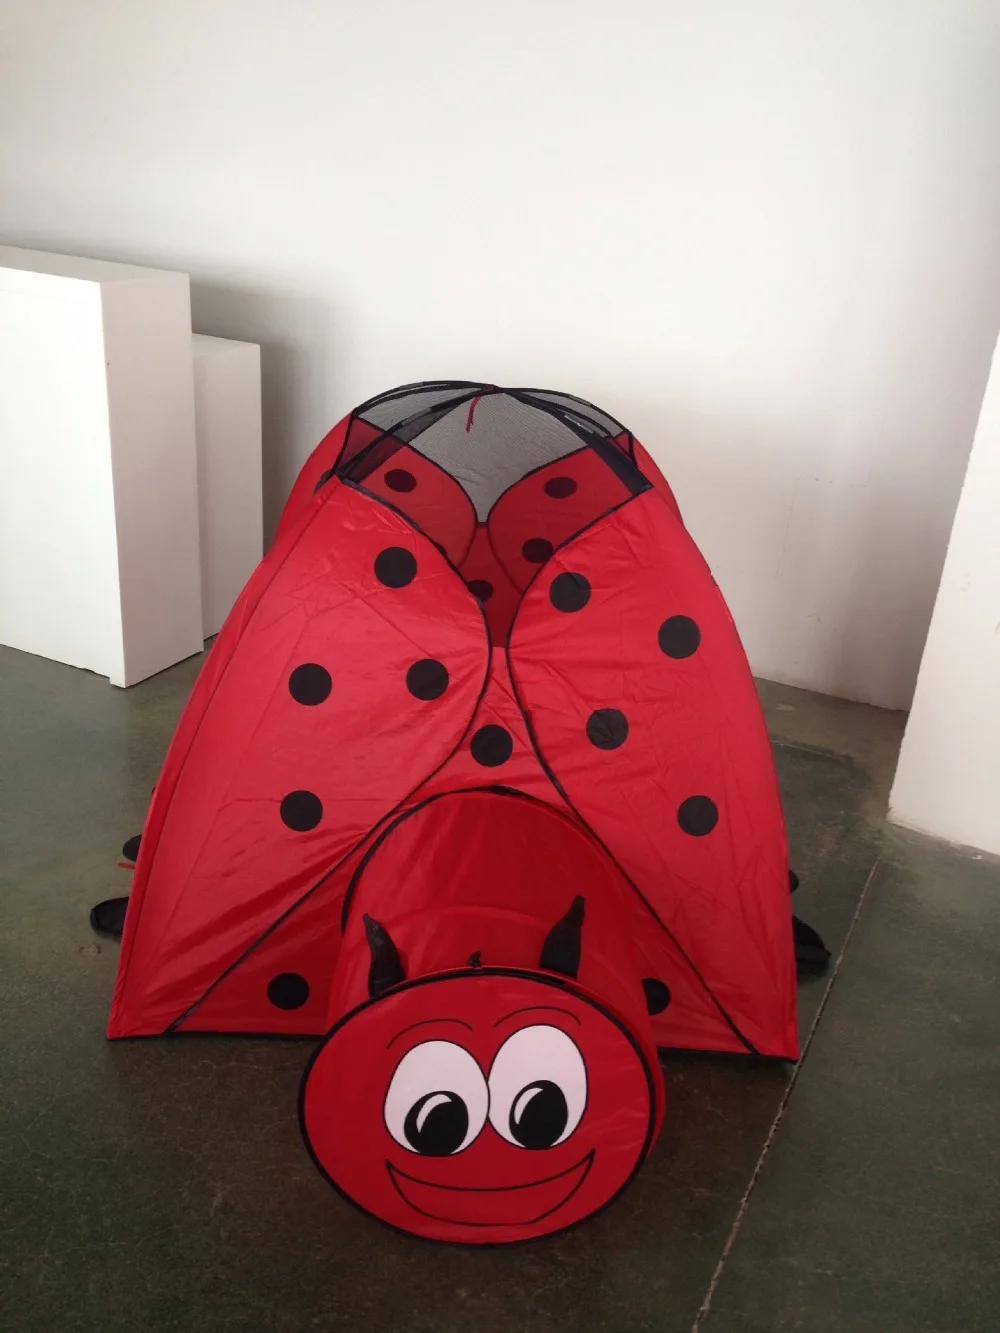 Горячая продажа Легкая Складная красочная в виде божьей коровки детская палатка, CZD-007 детская палатка как детская игровая комната, игровая